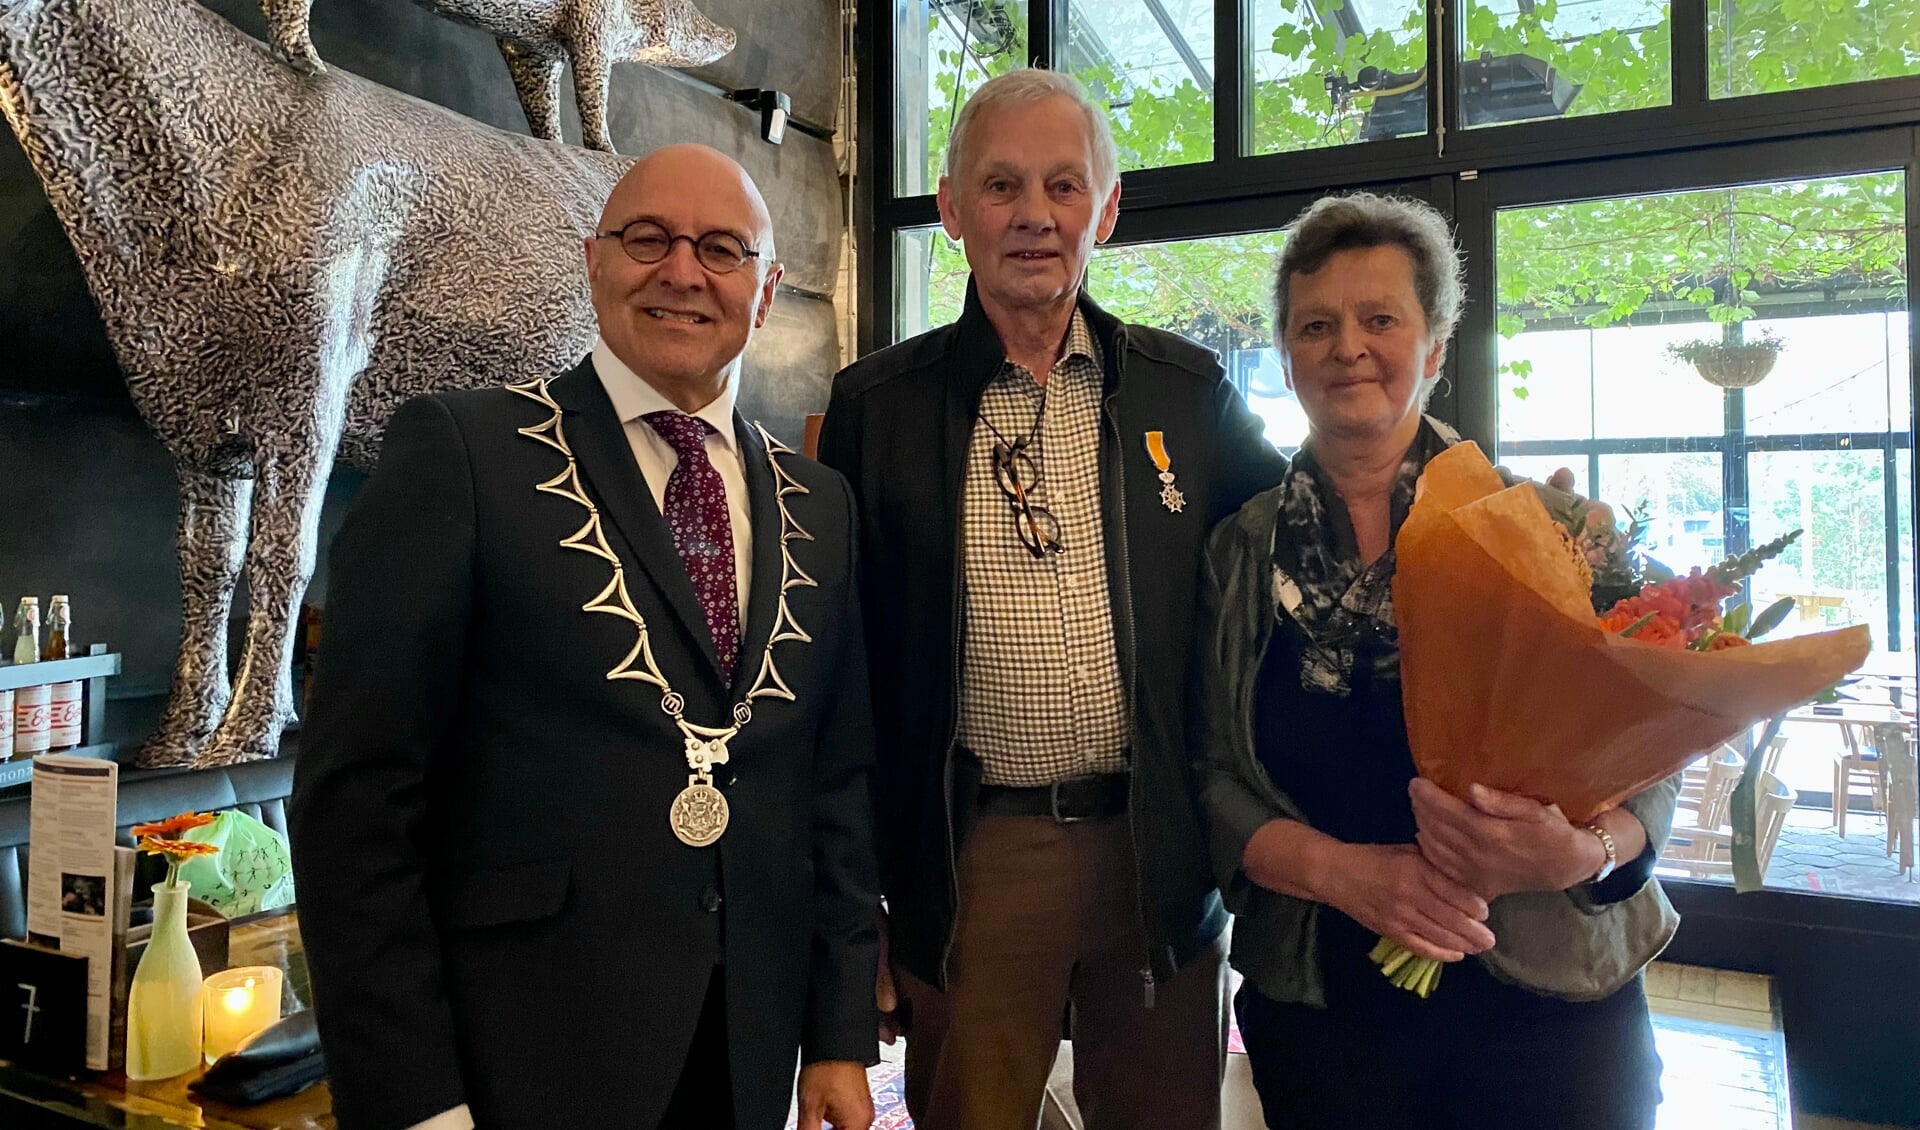 Burgemeester Kees van Rooij samen op de foto met Jan Peters en zijn vrouw.